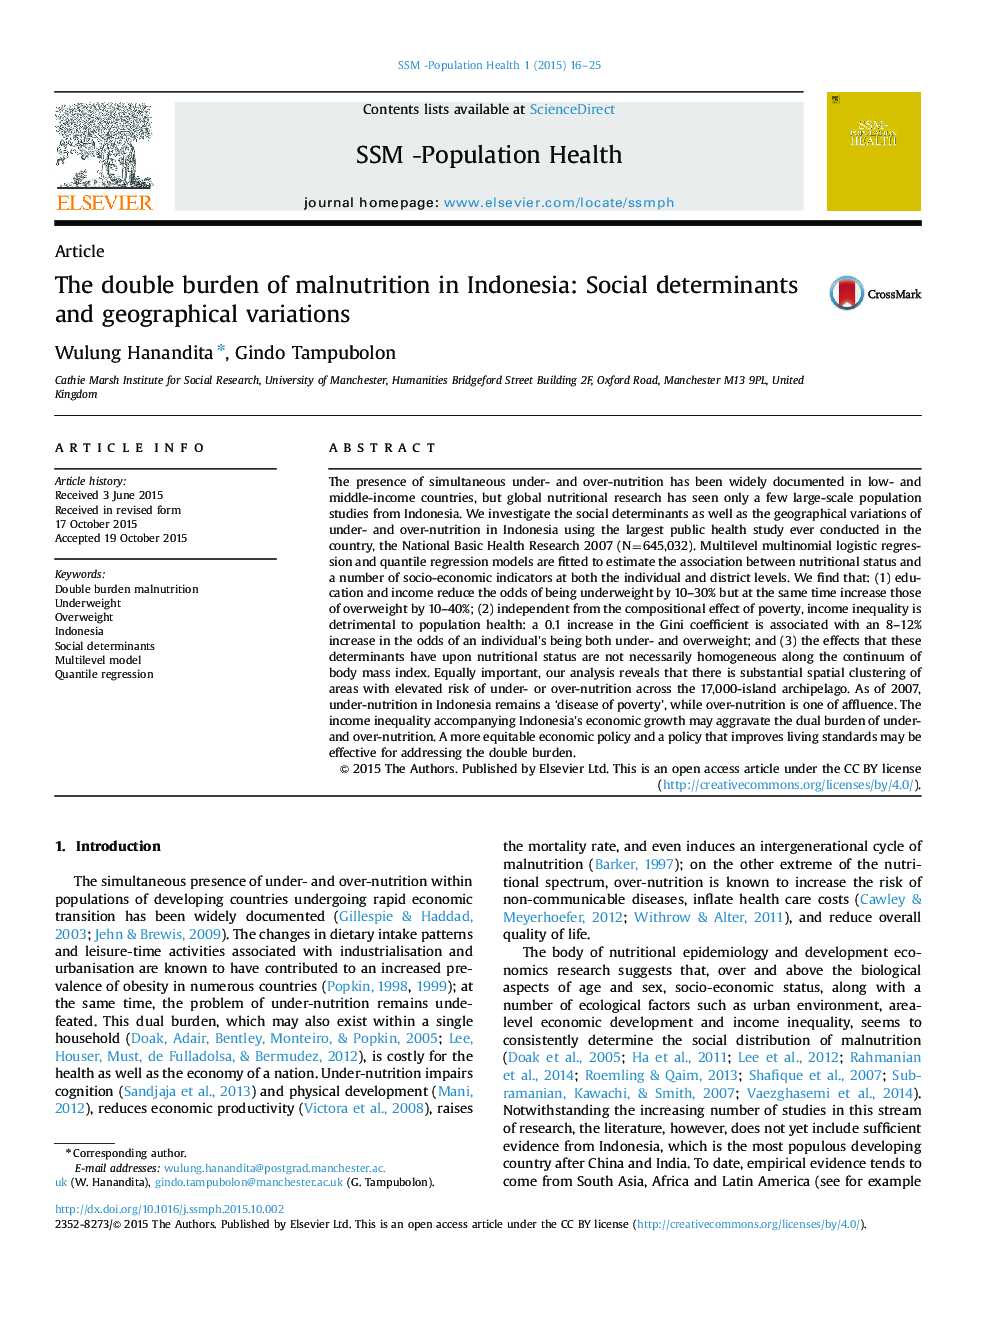 دو عامل سوء تغذیه در اندونزی: تعیین کننده های اجتماعی و تغییرات جغرافیایی 